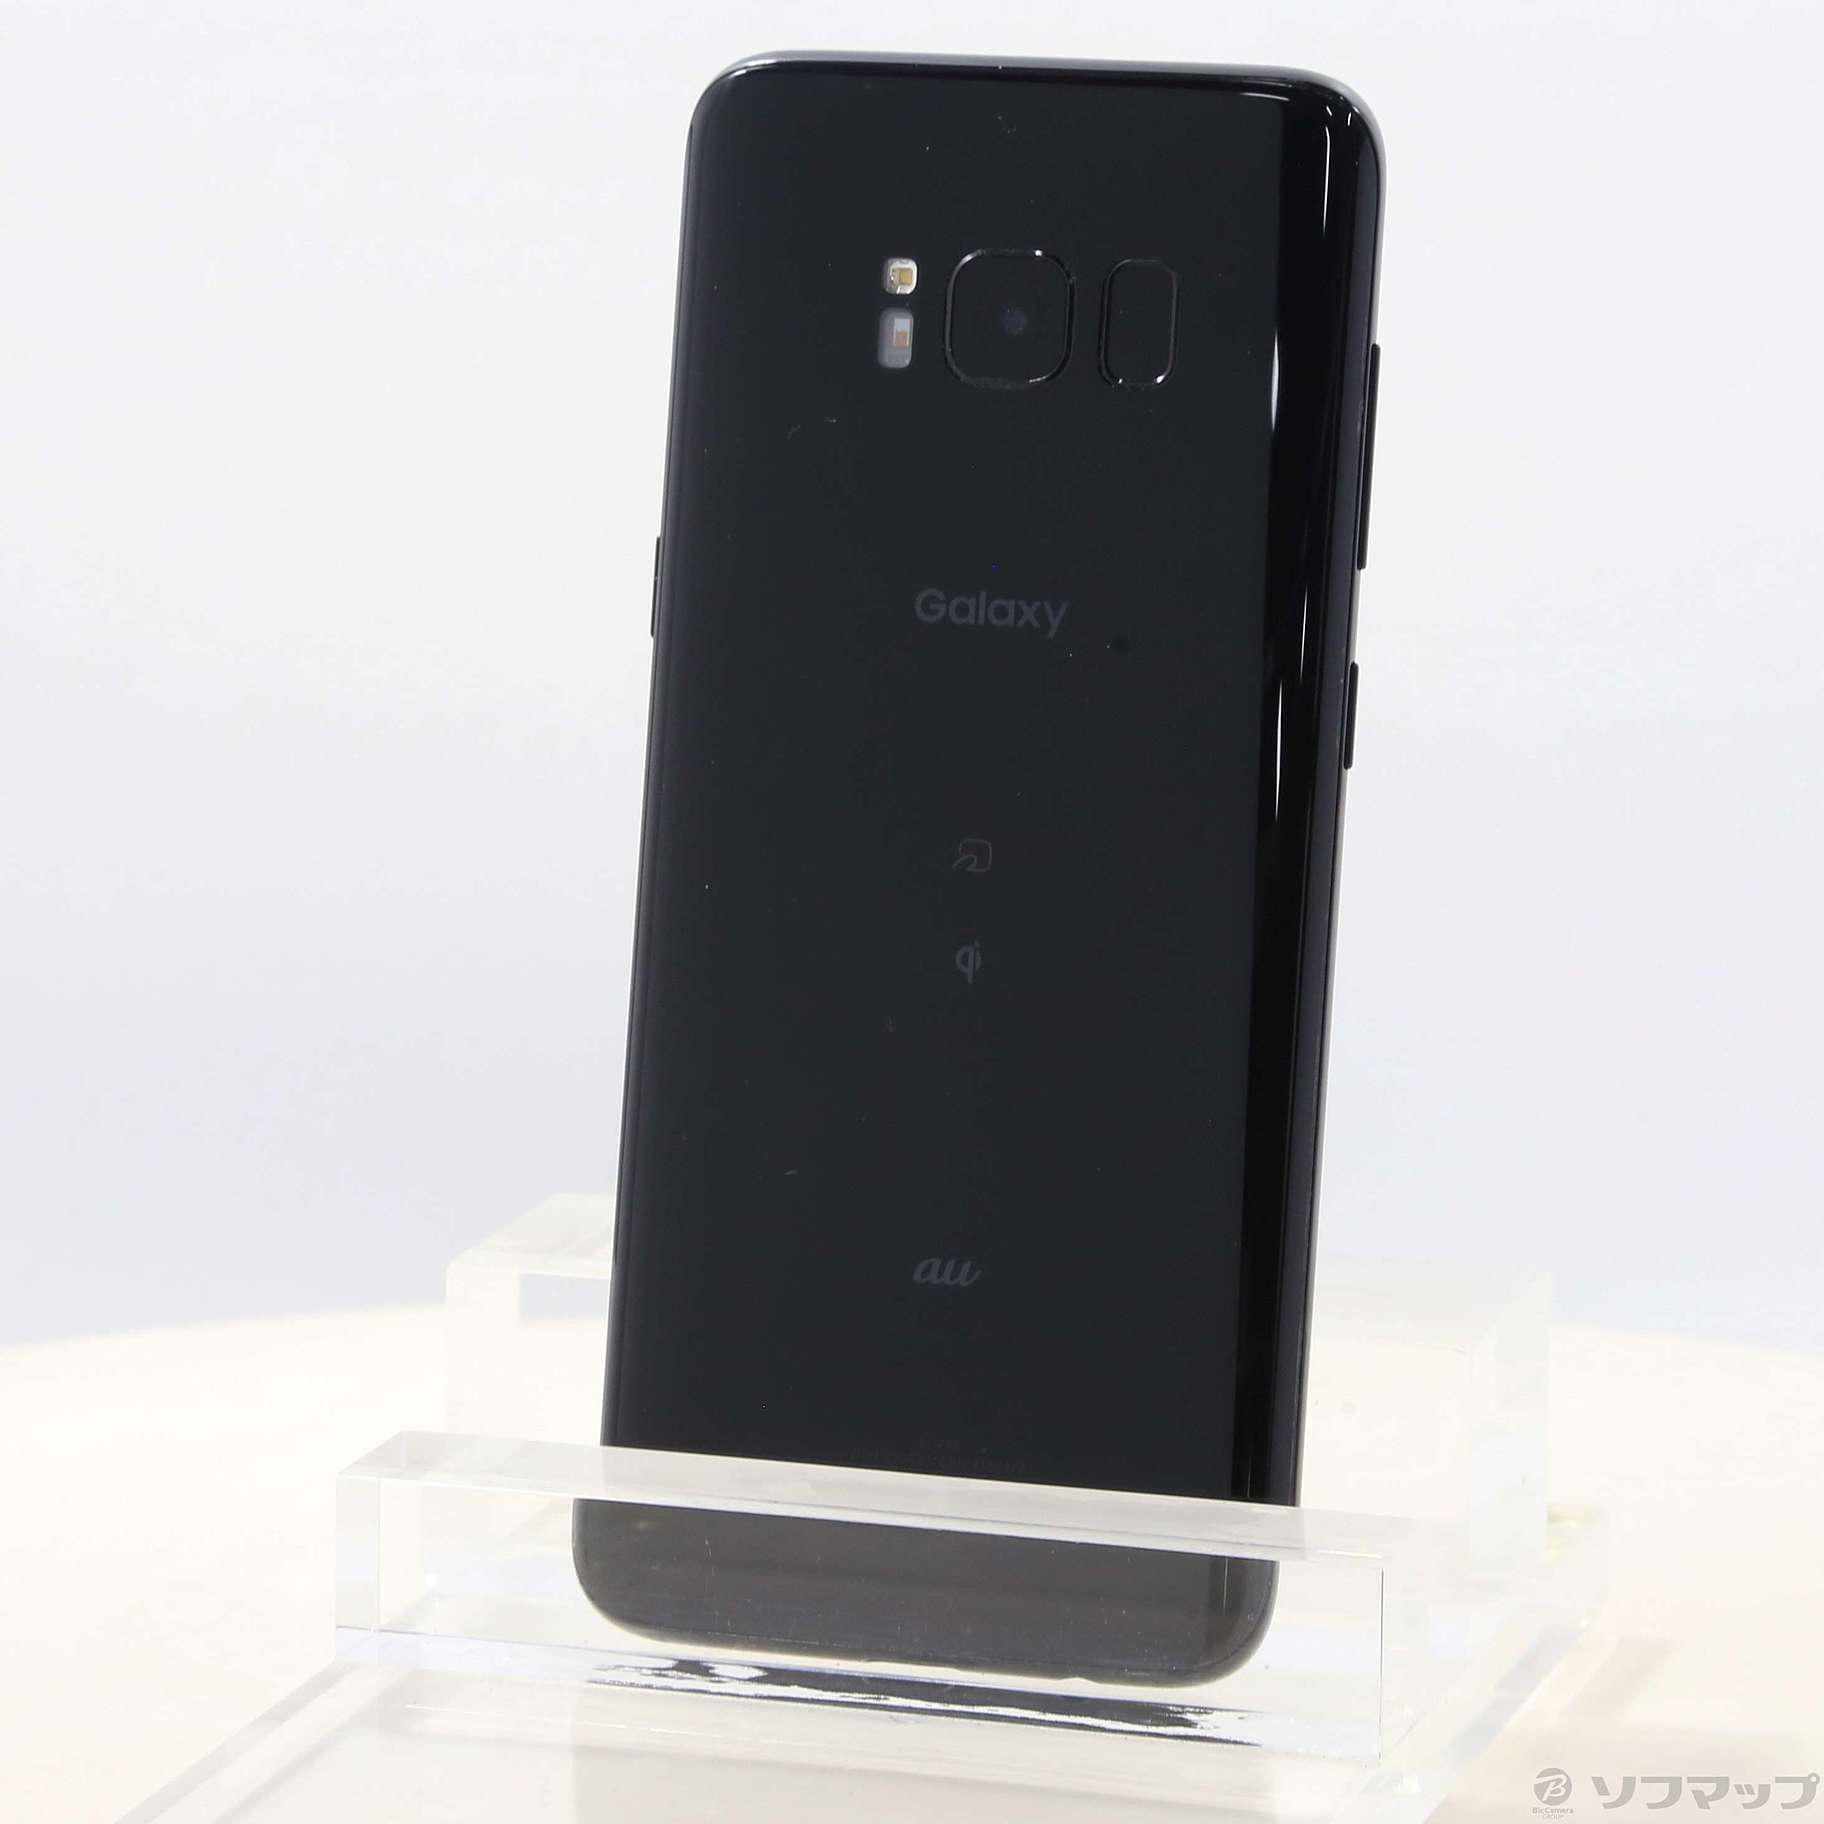 Galaxy S8+ Black 64 GB auスマートフォン/携帯電話